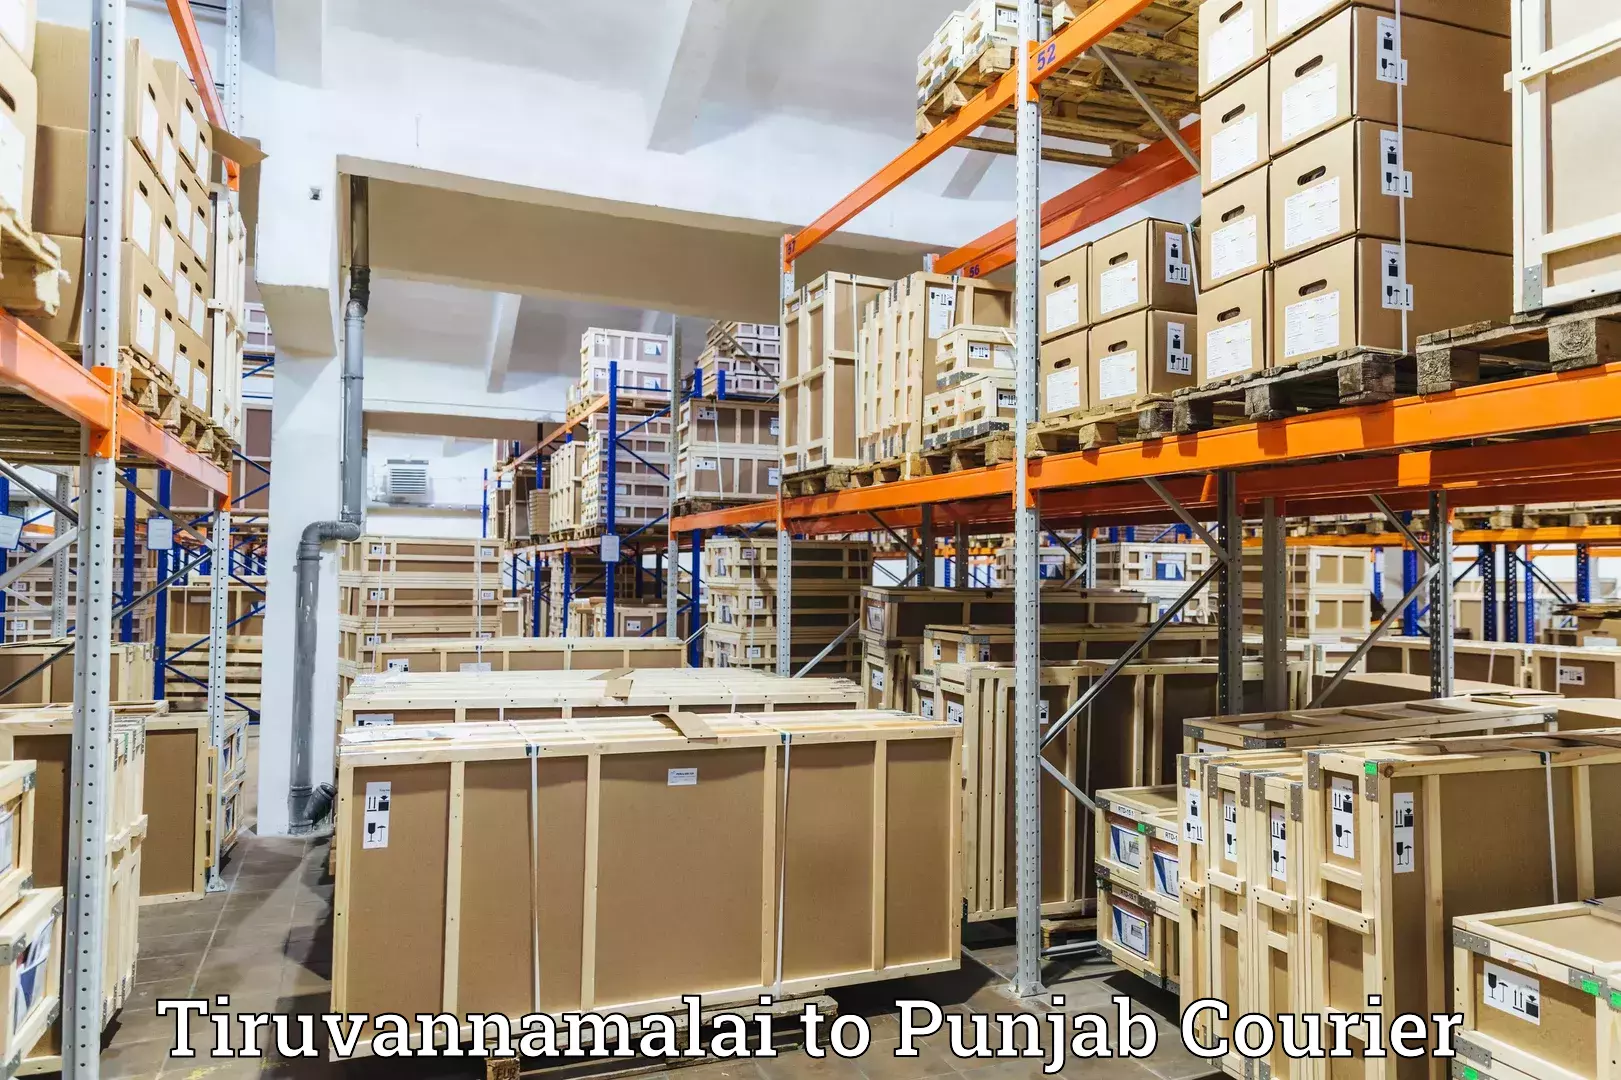 Courier service innovation Tiruvannamalai to Punjab